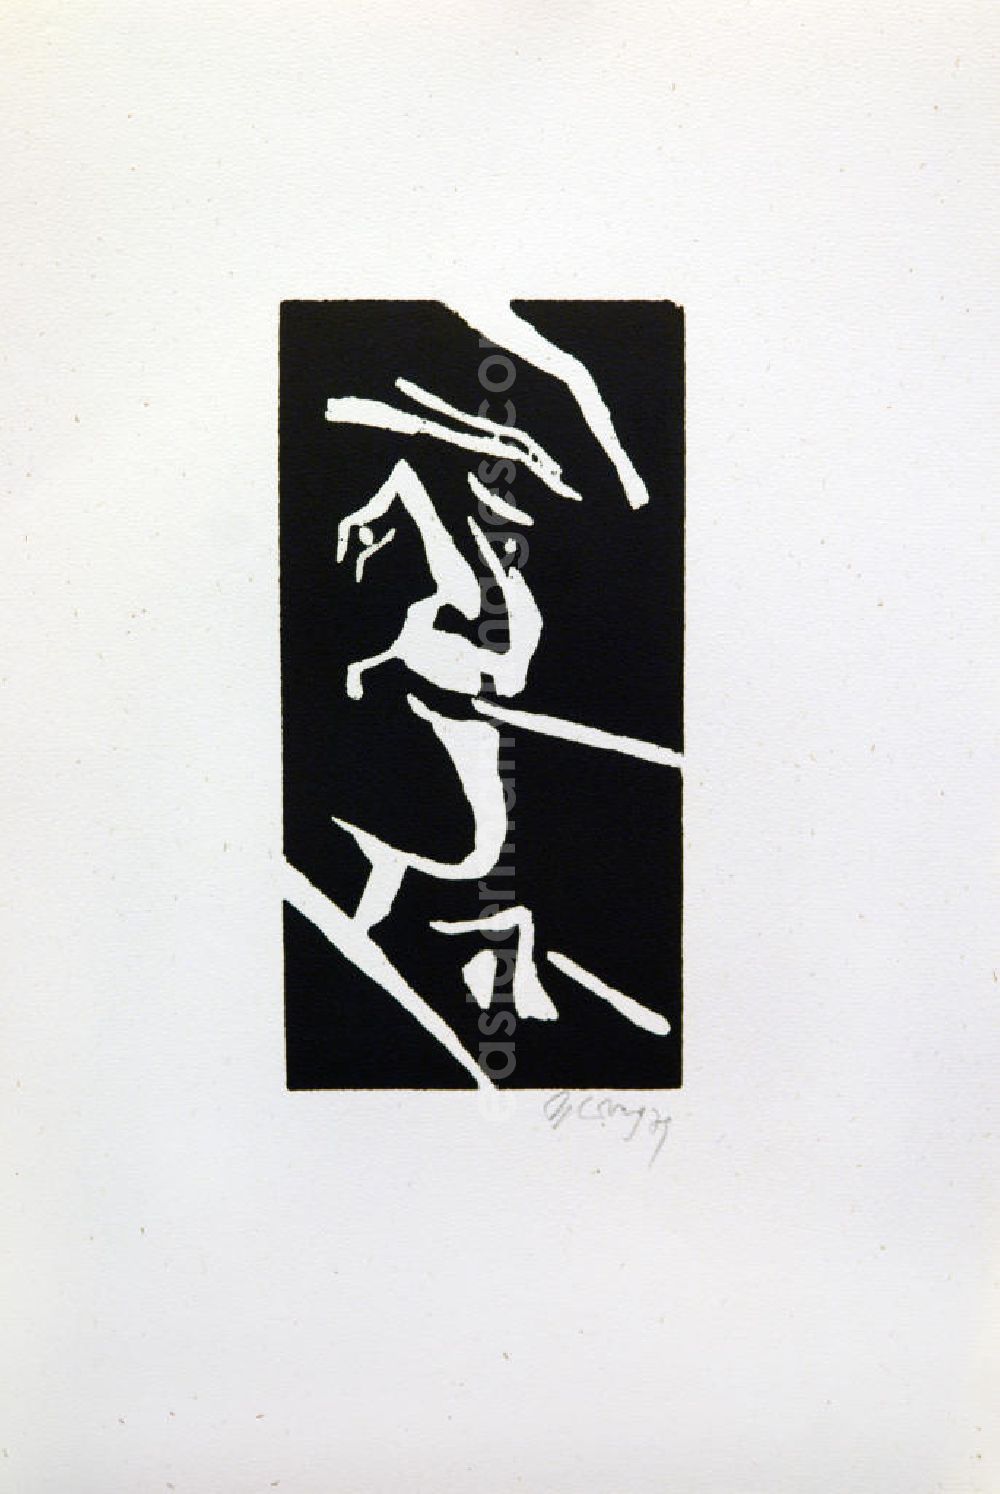 Berlin: Grafik von Herbert Sandberg über Bertolt Brecht (*10.02.1898 †14.08.1956) aus dem Jahr 1978 als Erinnerung anlässlich seines 80. Geburtstages (Brecht beim Rauchen, Gesicht nah von rechts) Holzschnitt auf handgeschöpftem Bütten 20,5 x1